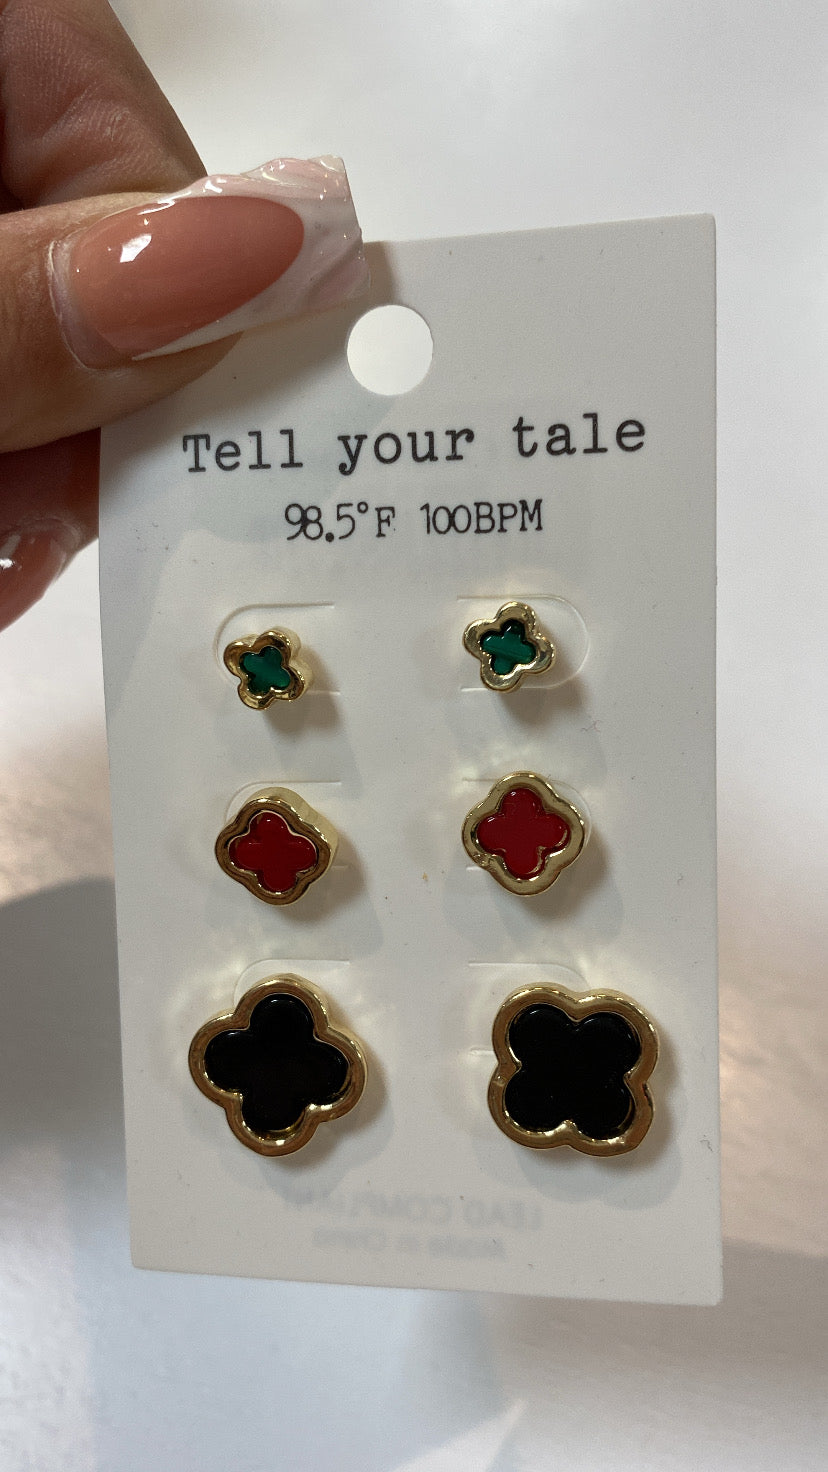 Tell Your tale earrings